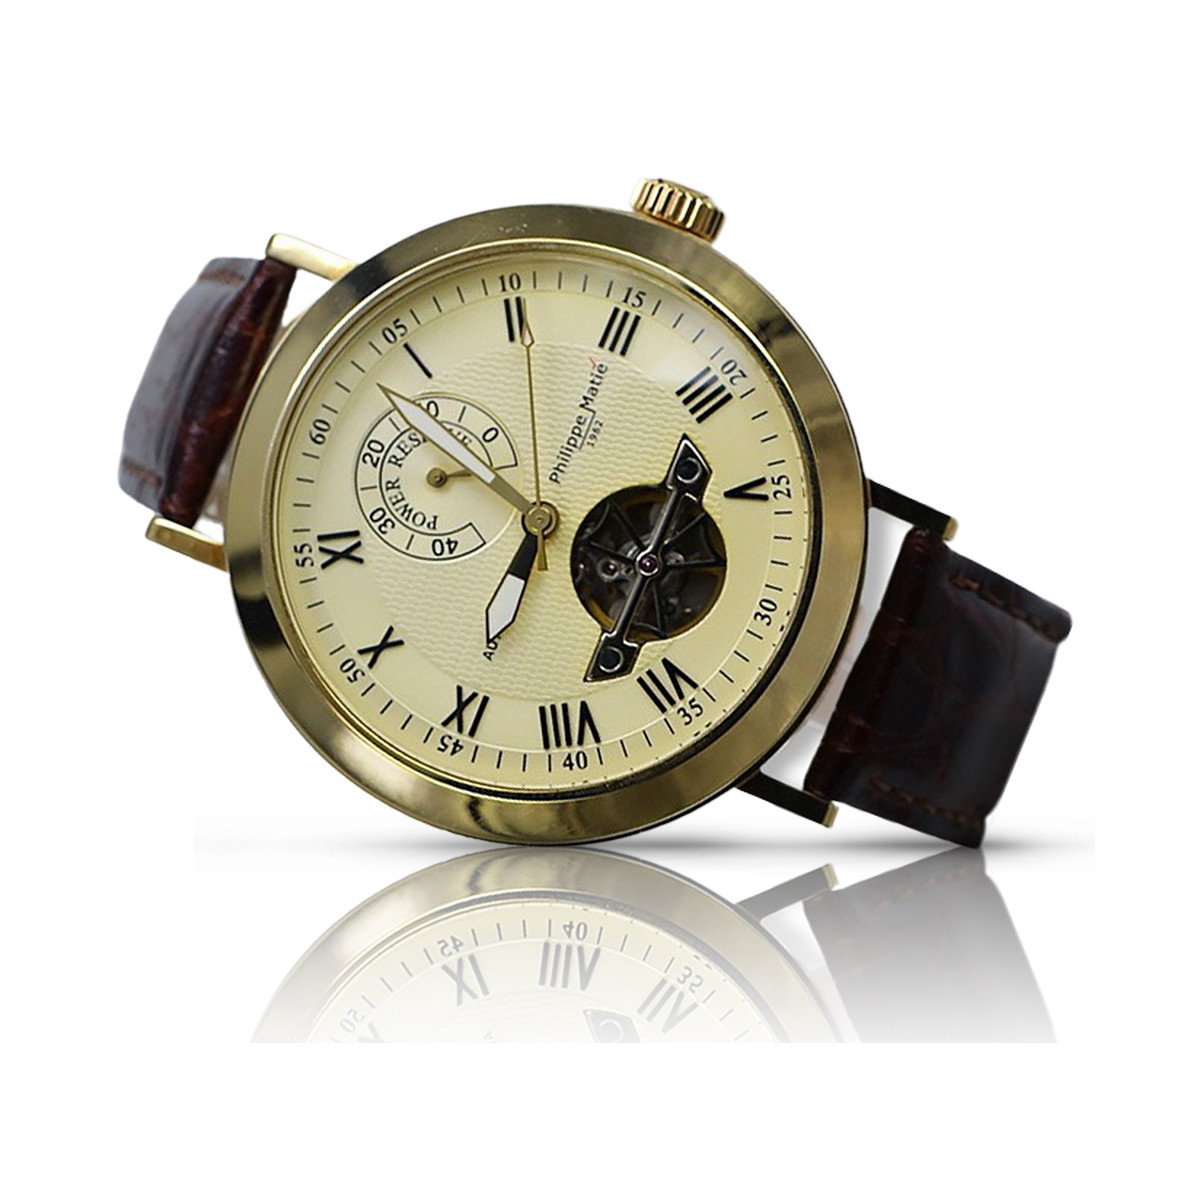 Італійський чоловічий годинник mw065y з жовтого золота 585 проби